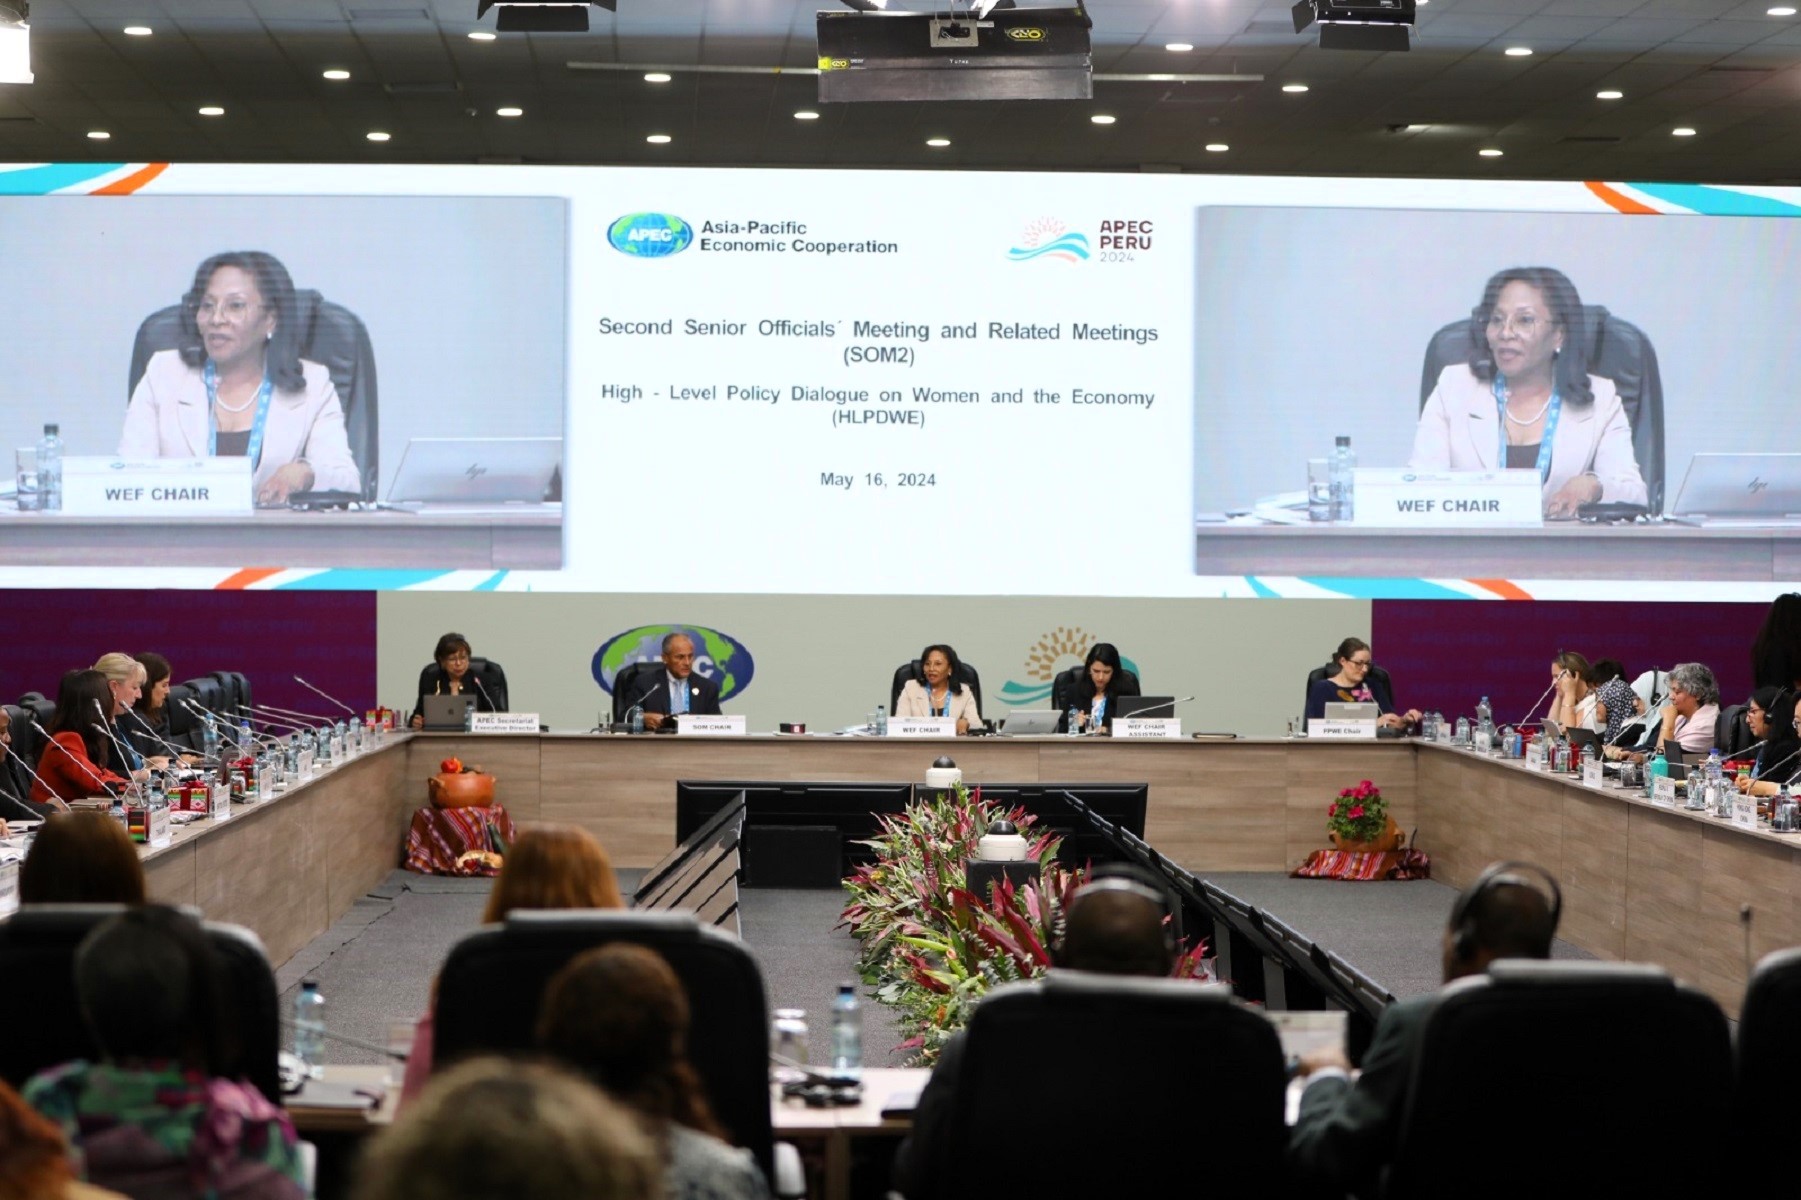 Al concluir 24° Reunión del Foro de APEC en Arequipa, sus 21 economías miembros aprueban la “Declaración Ministerial sobre Mujer y la Economía”.